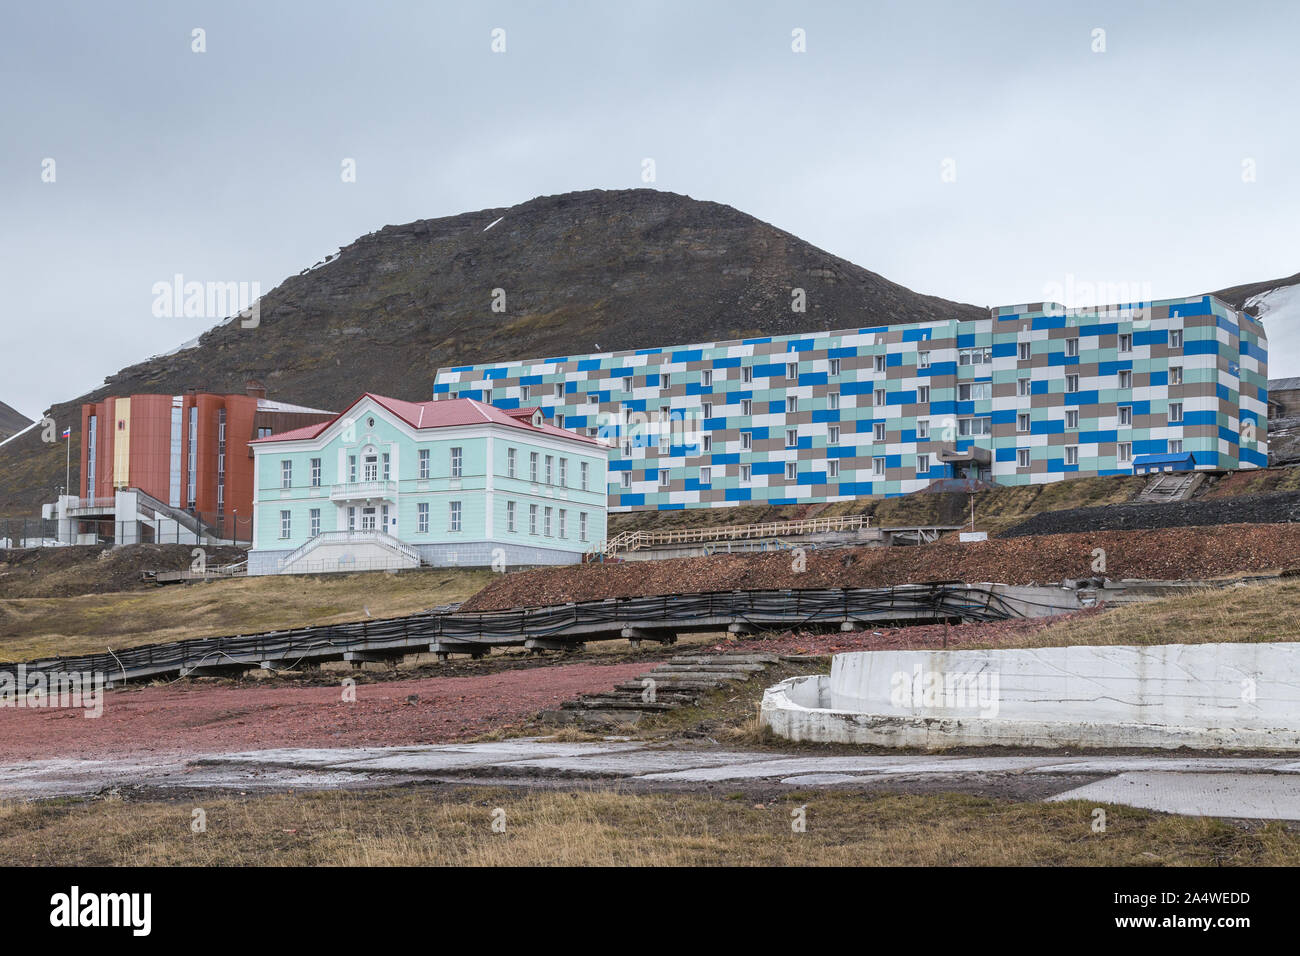 Les bâtiments colorés dans les mines de charbon russe Barentsburg règlement à Svalbard, Spitzberg, la Norvège dans l'Arctique Banque D'Images